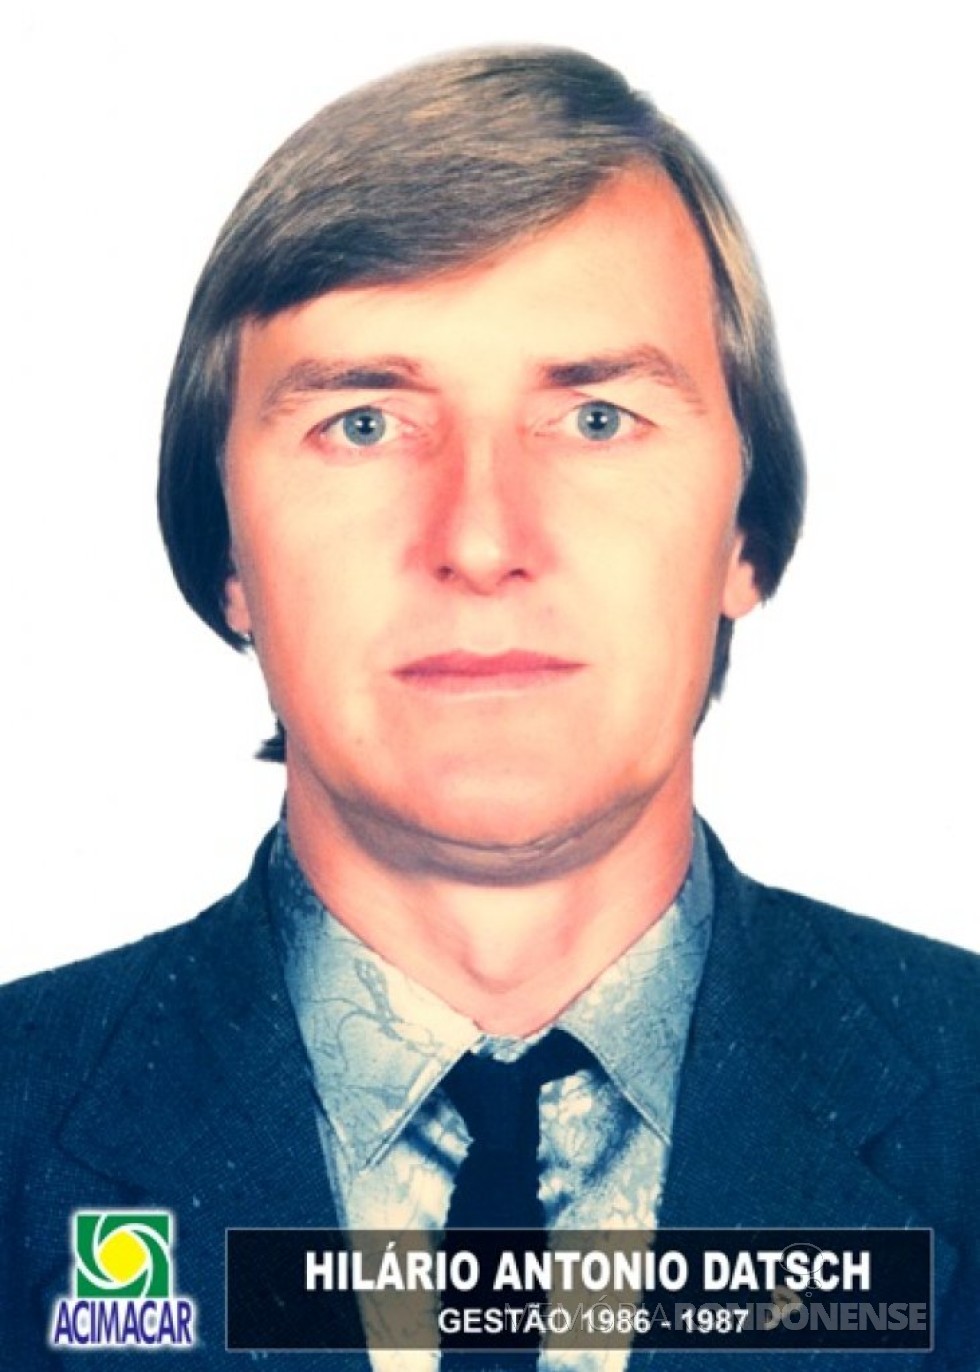 Empresário rondonense Hilário Antonio Datsch eleito presidente da ACIMACAR para a gestão 1986/1987.
Imagem: Acervo Acimacar - FOTO 7 - 